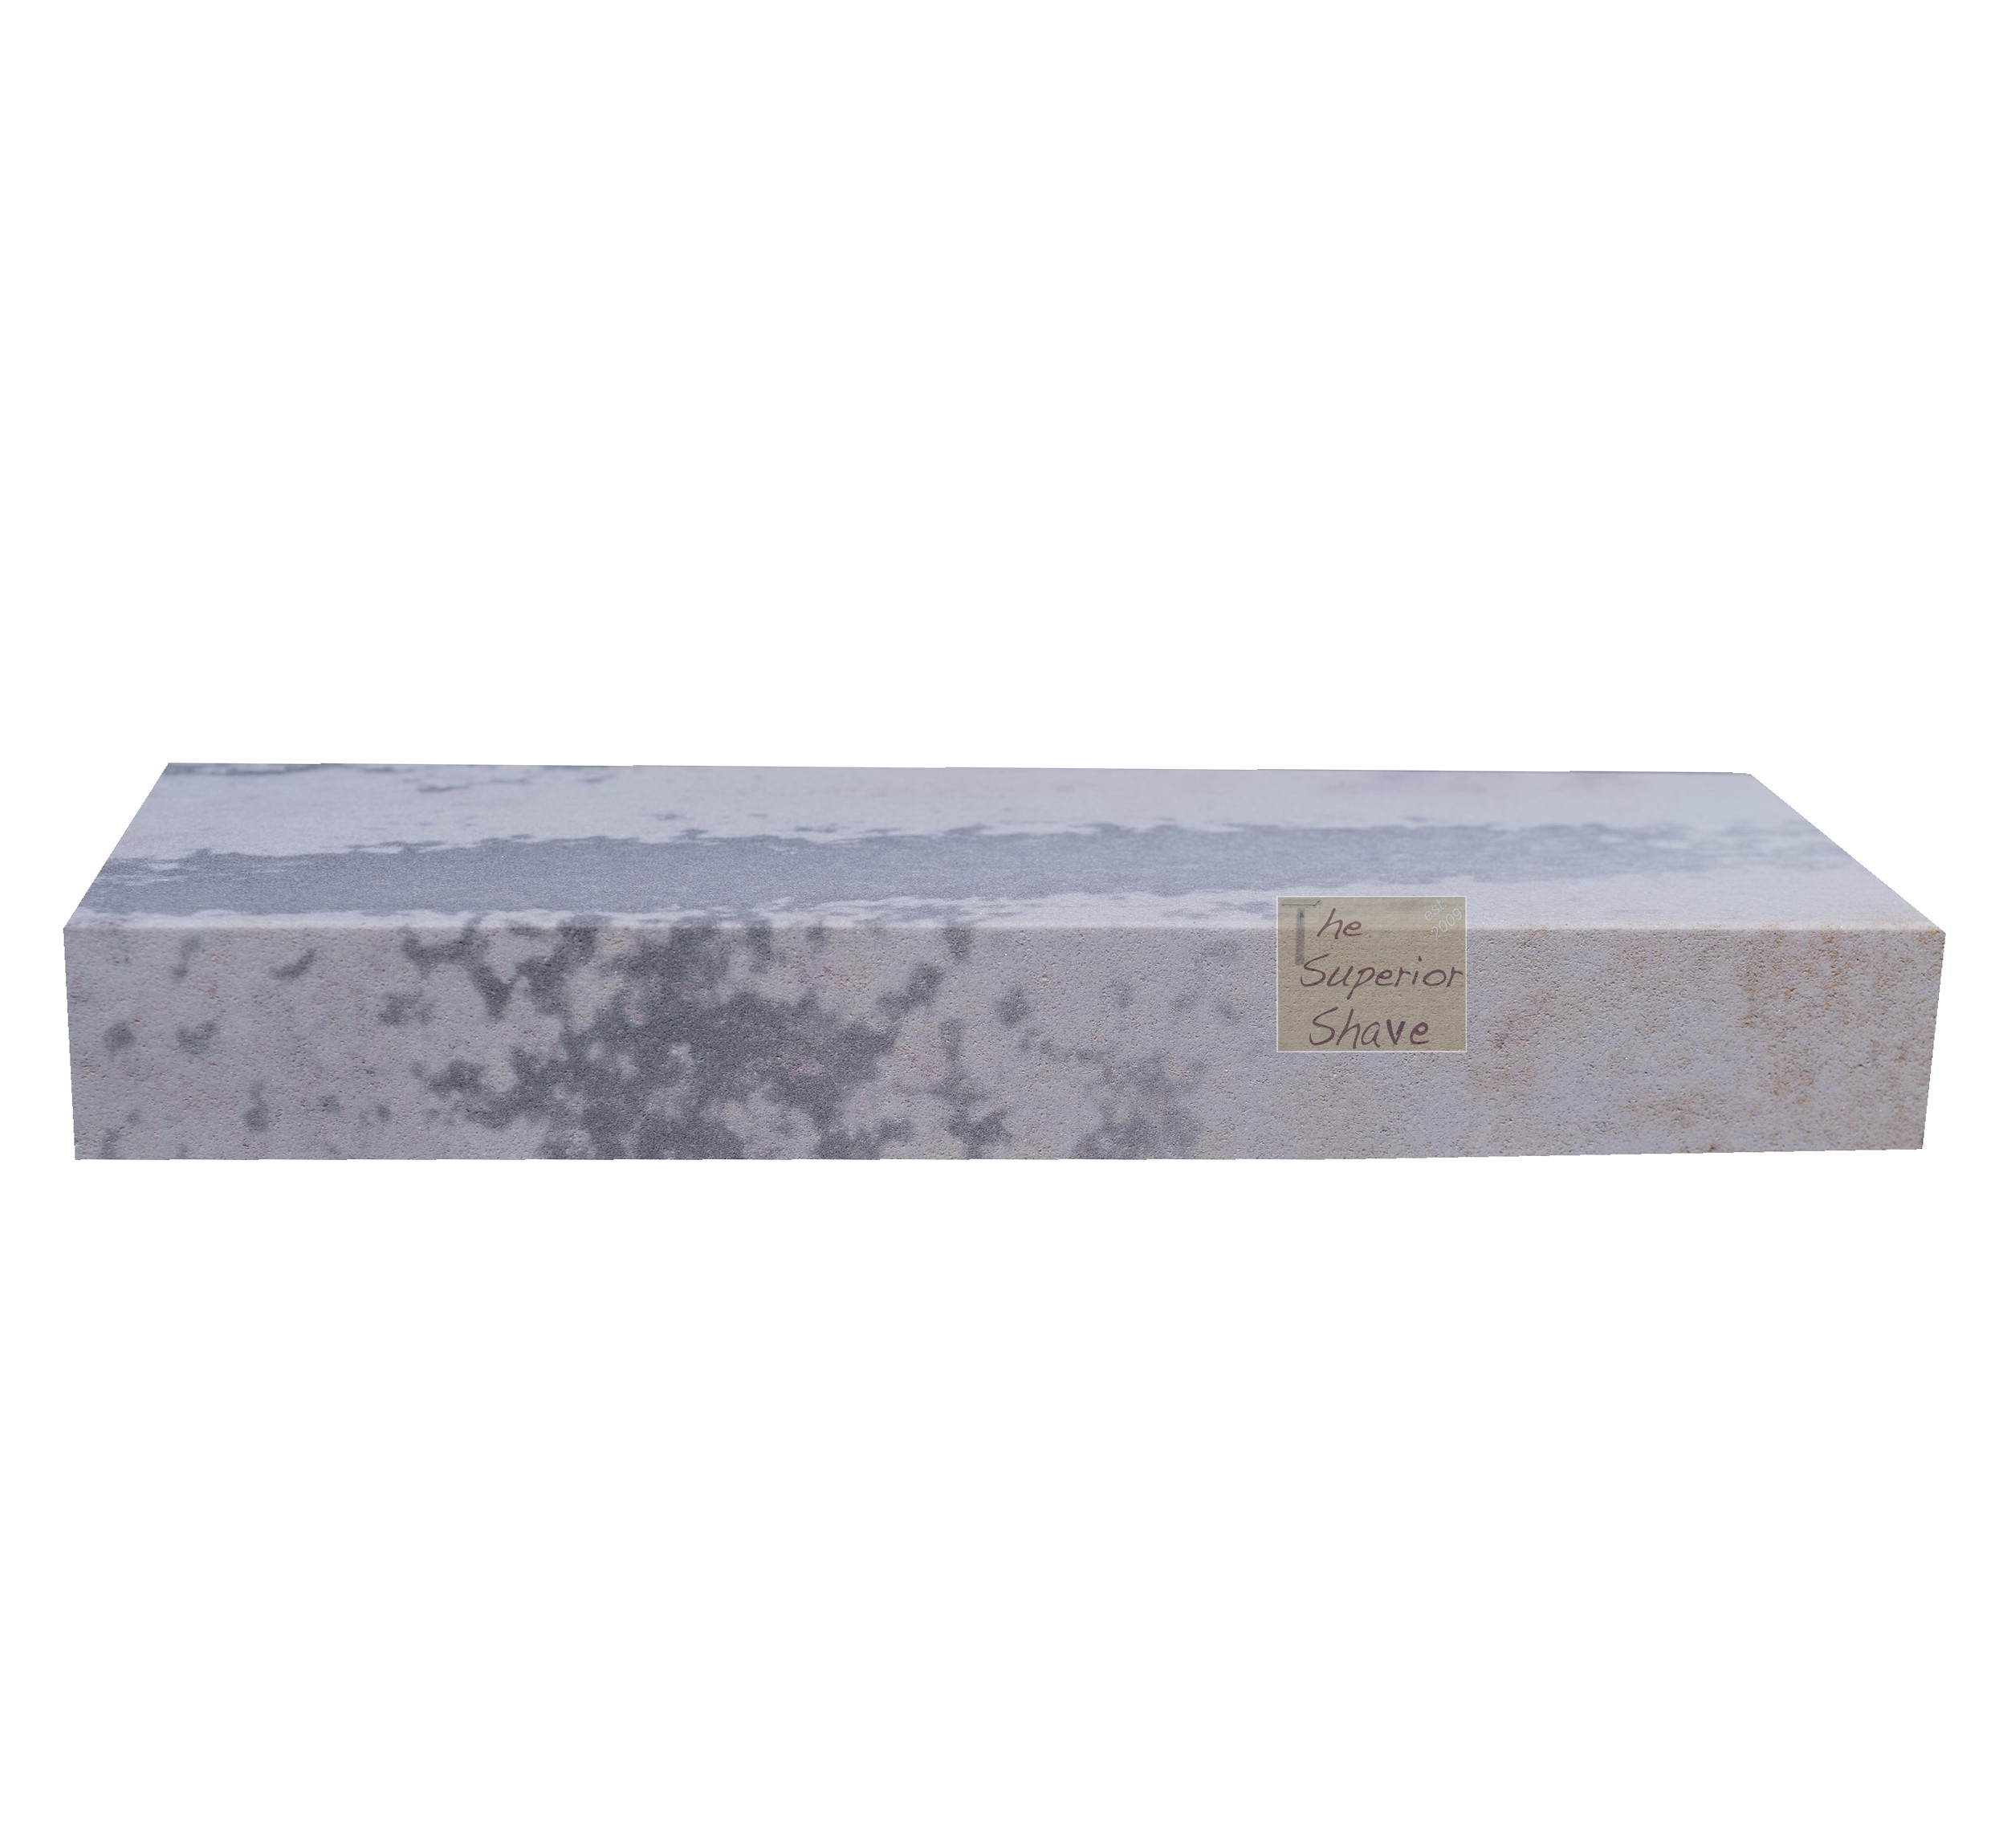 SPECIAL SOFT Bench Stone 6 X 2 X 3/4-1 ID 1102S04 - Dan's Whetstone